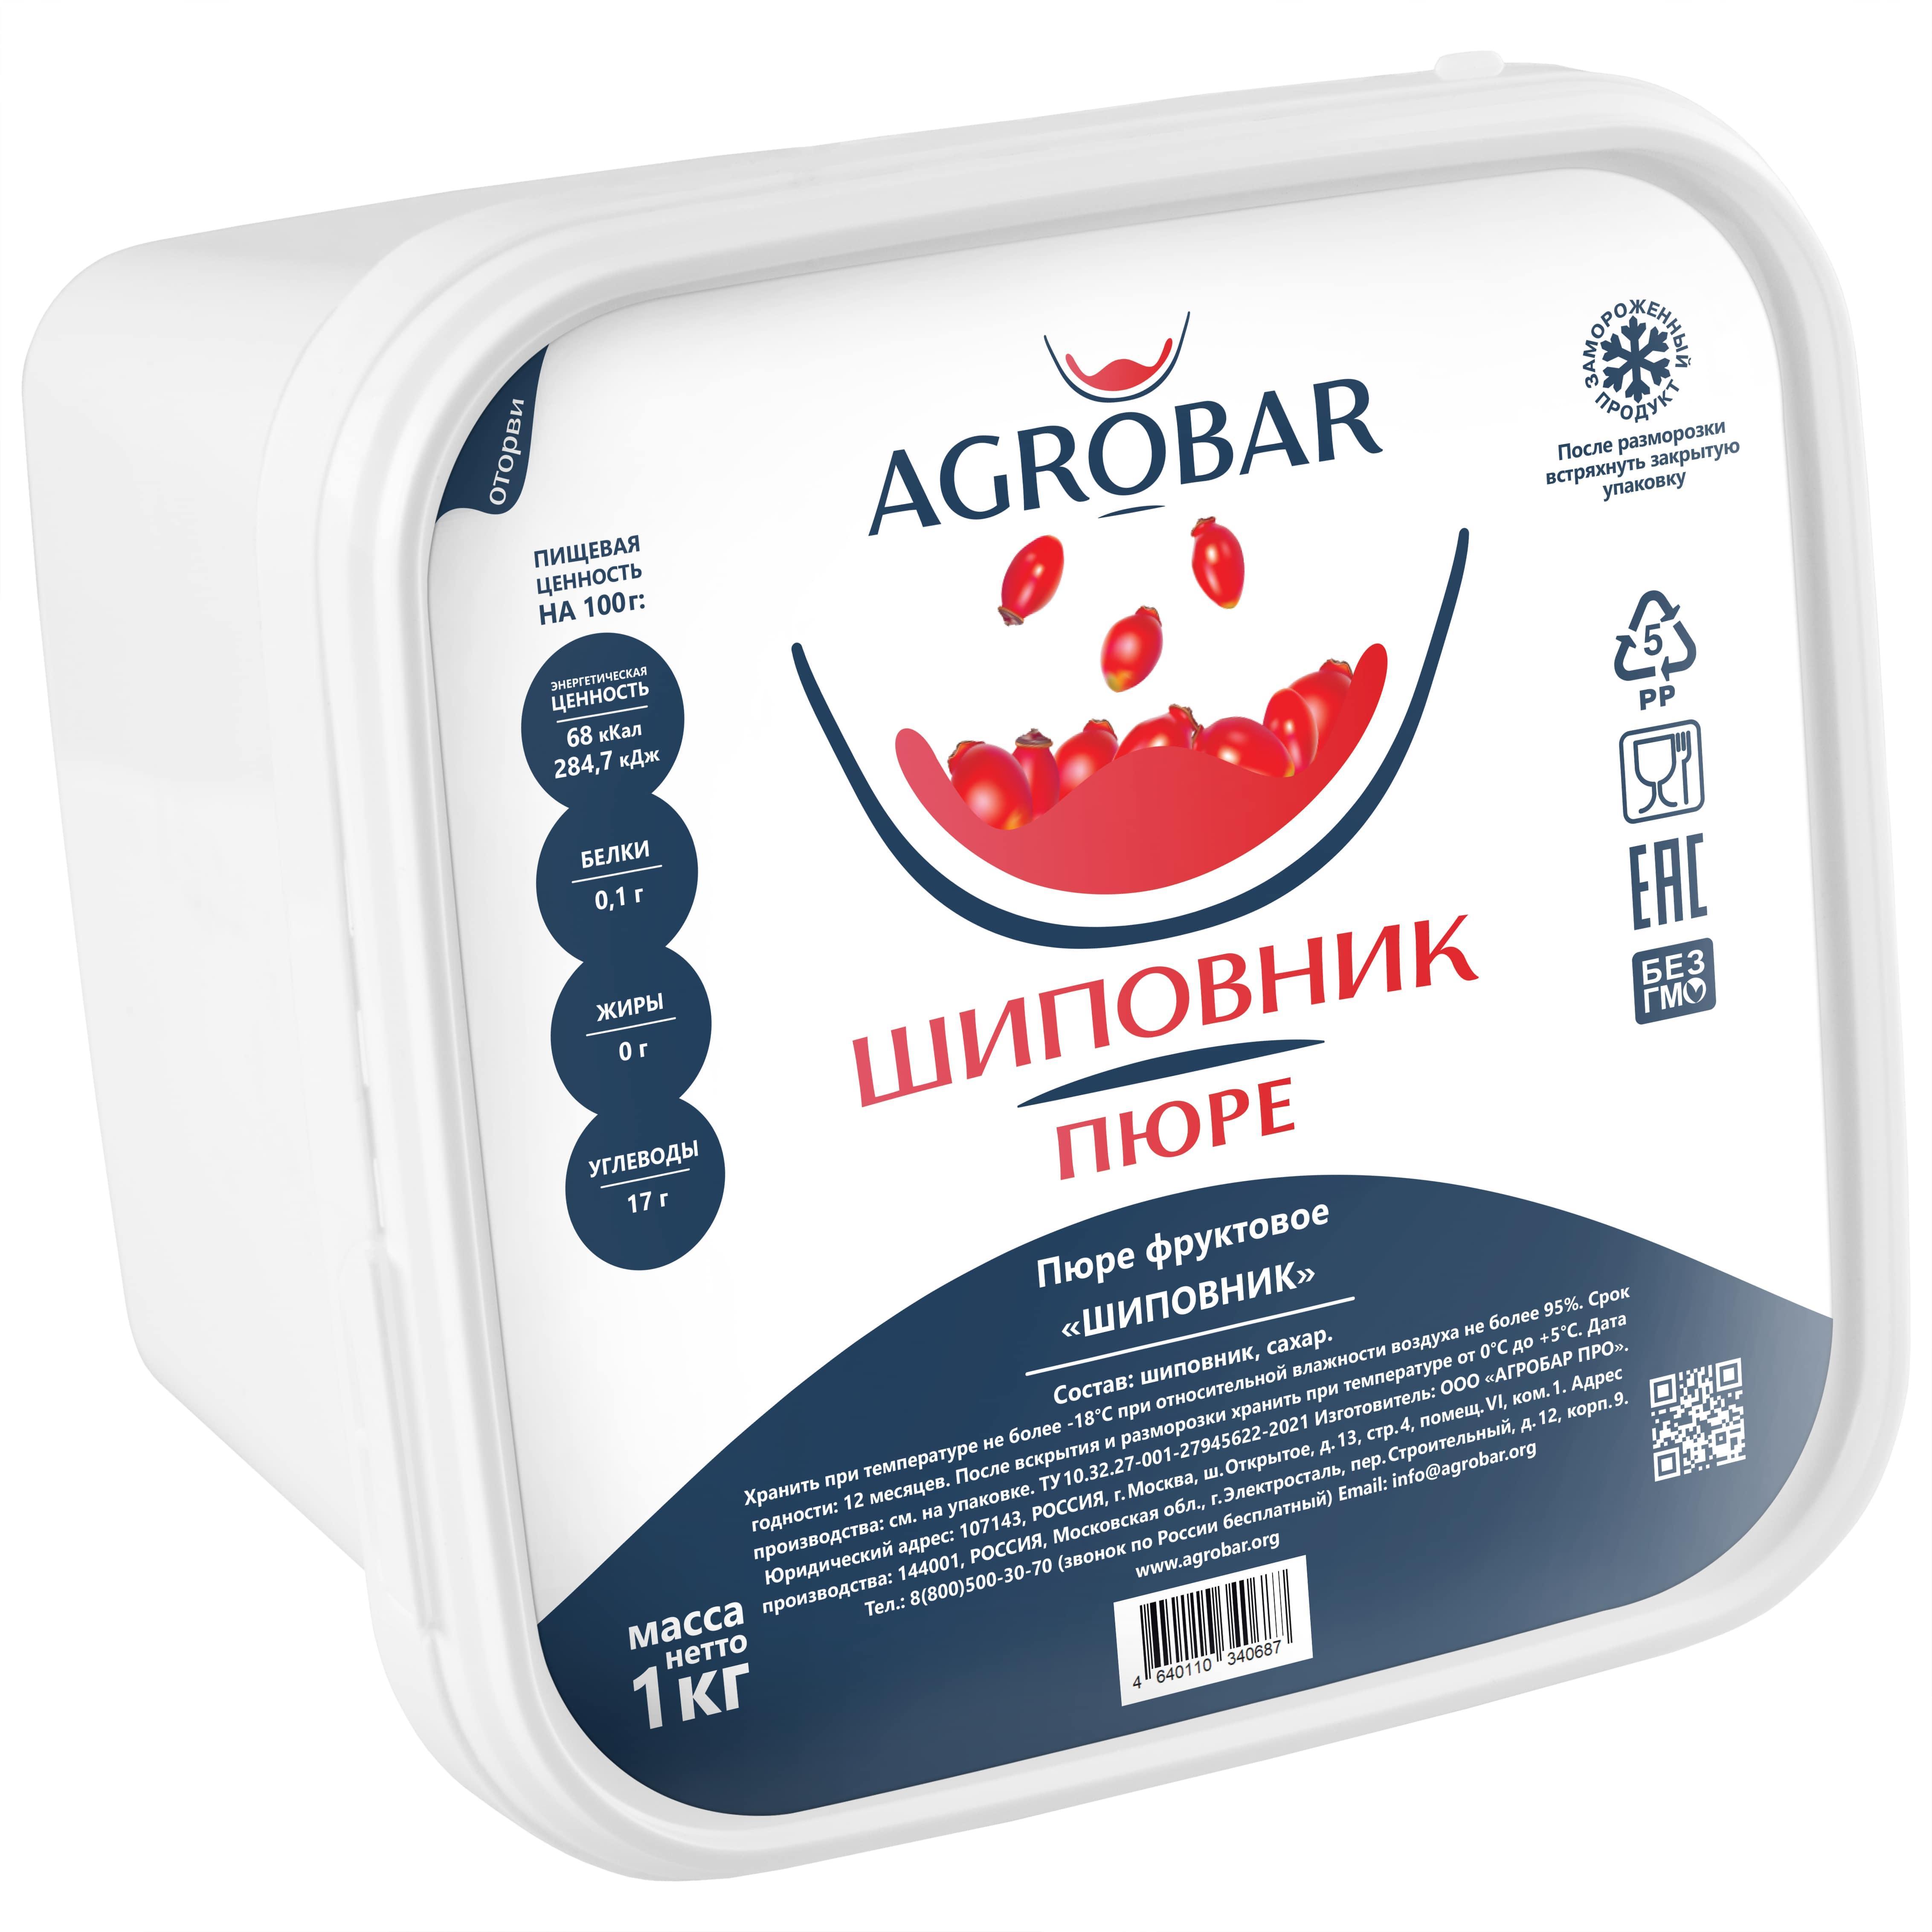 Пюре AGROBAR  Шиповник 1 кг., пластиковый контейнер